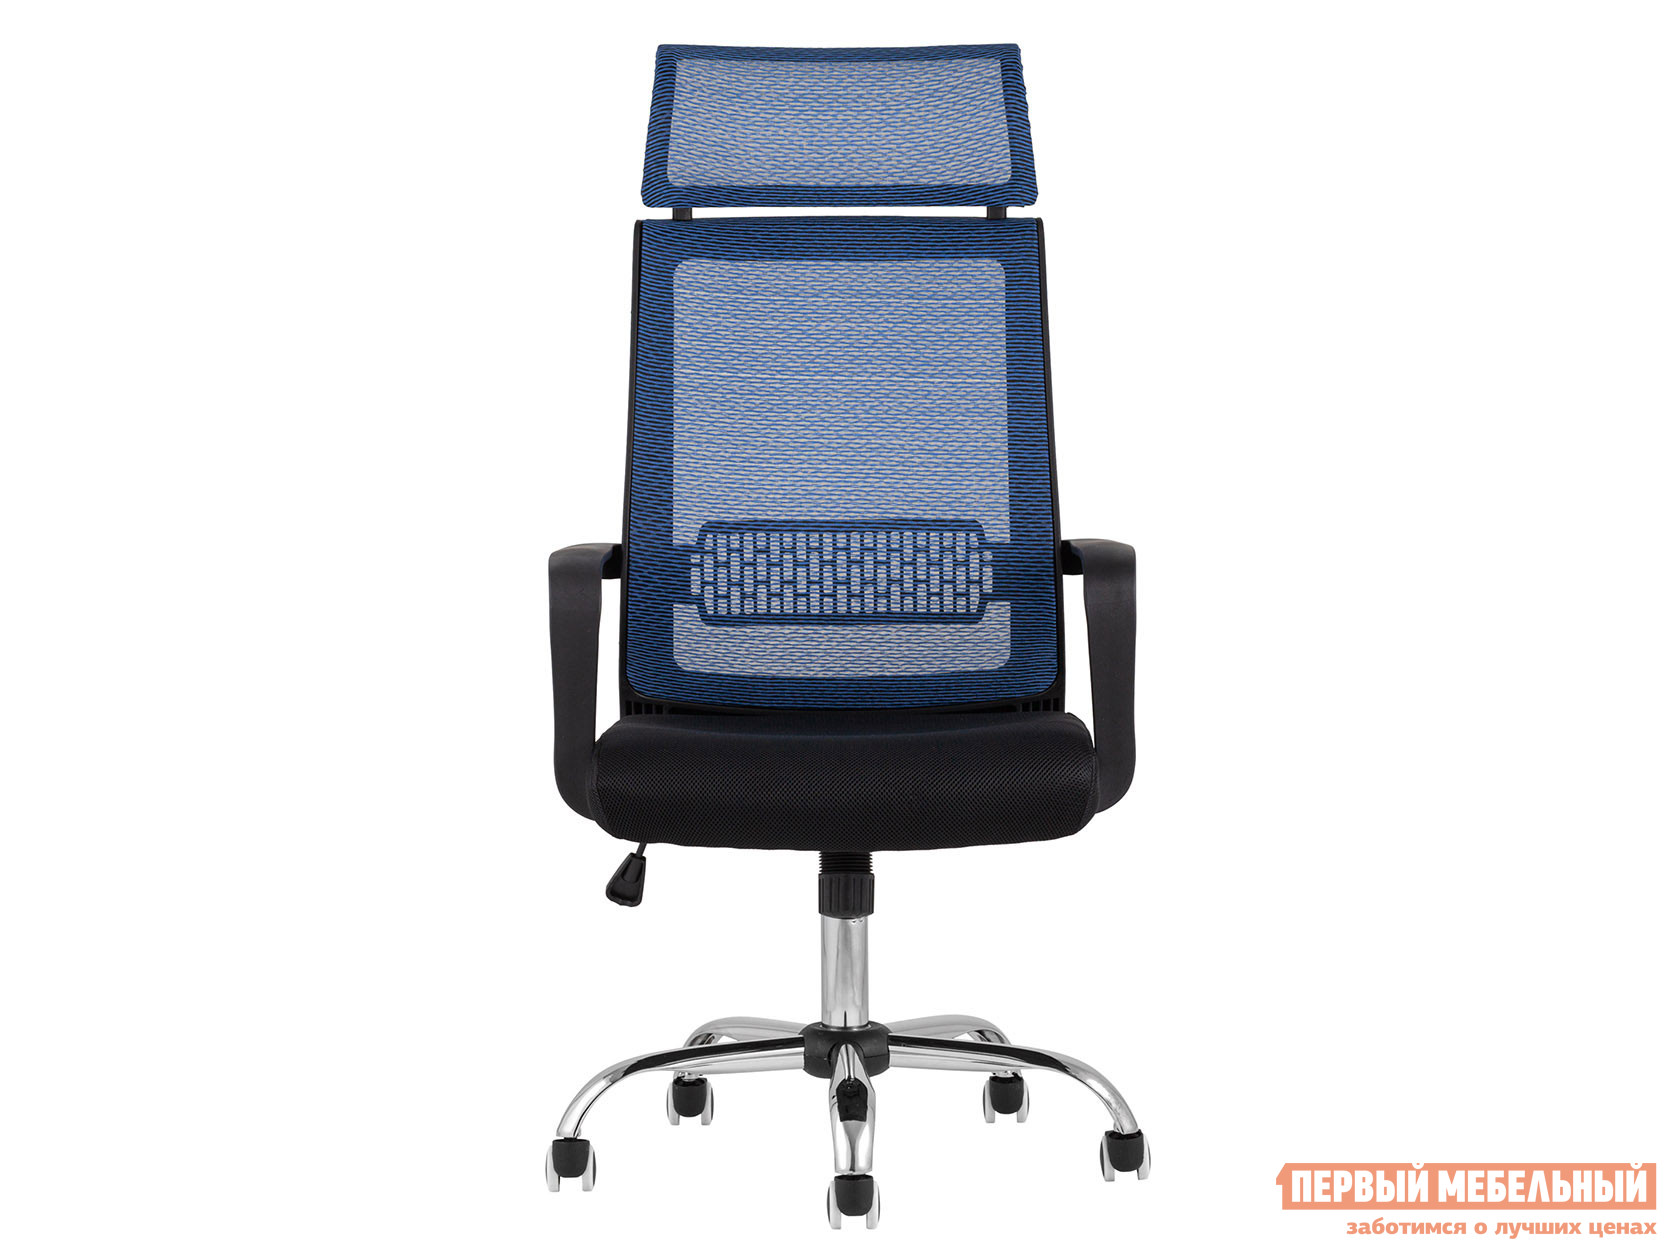 Офисное кресло  TopChairs Style Черный, сетка / Синий, сетка от Первый Мебельный